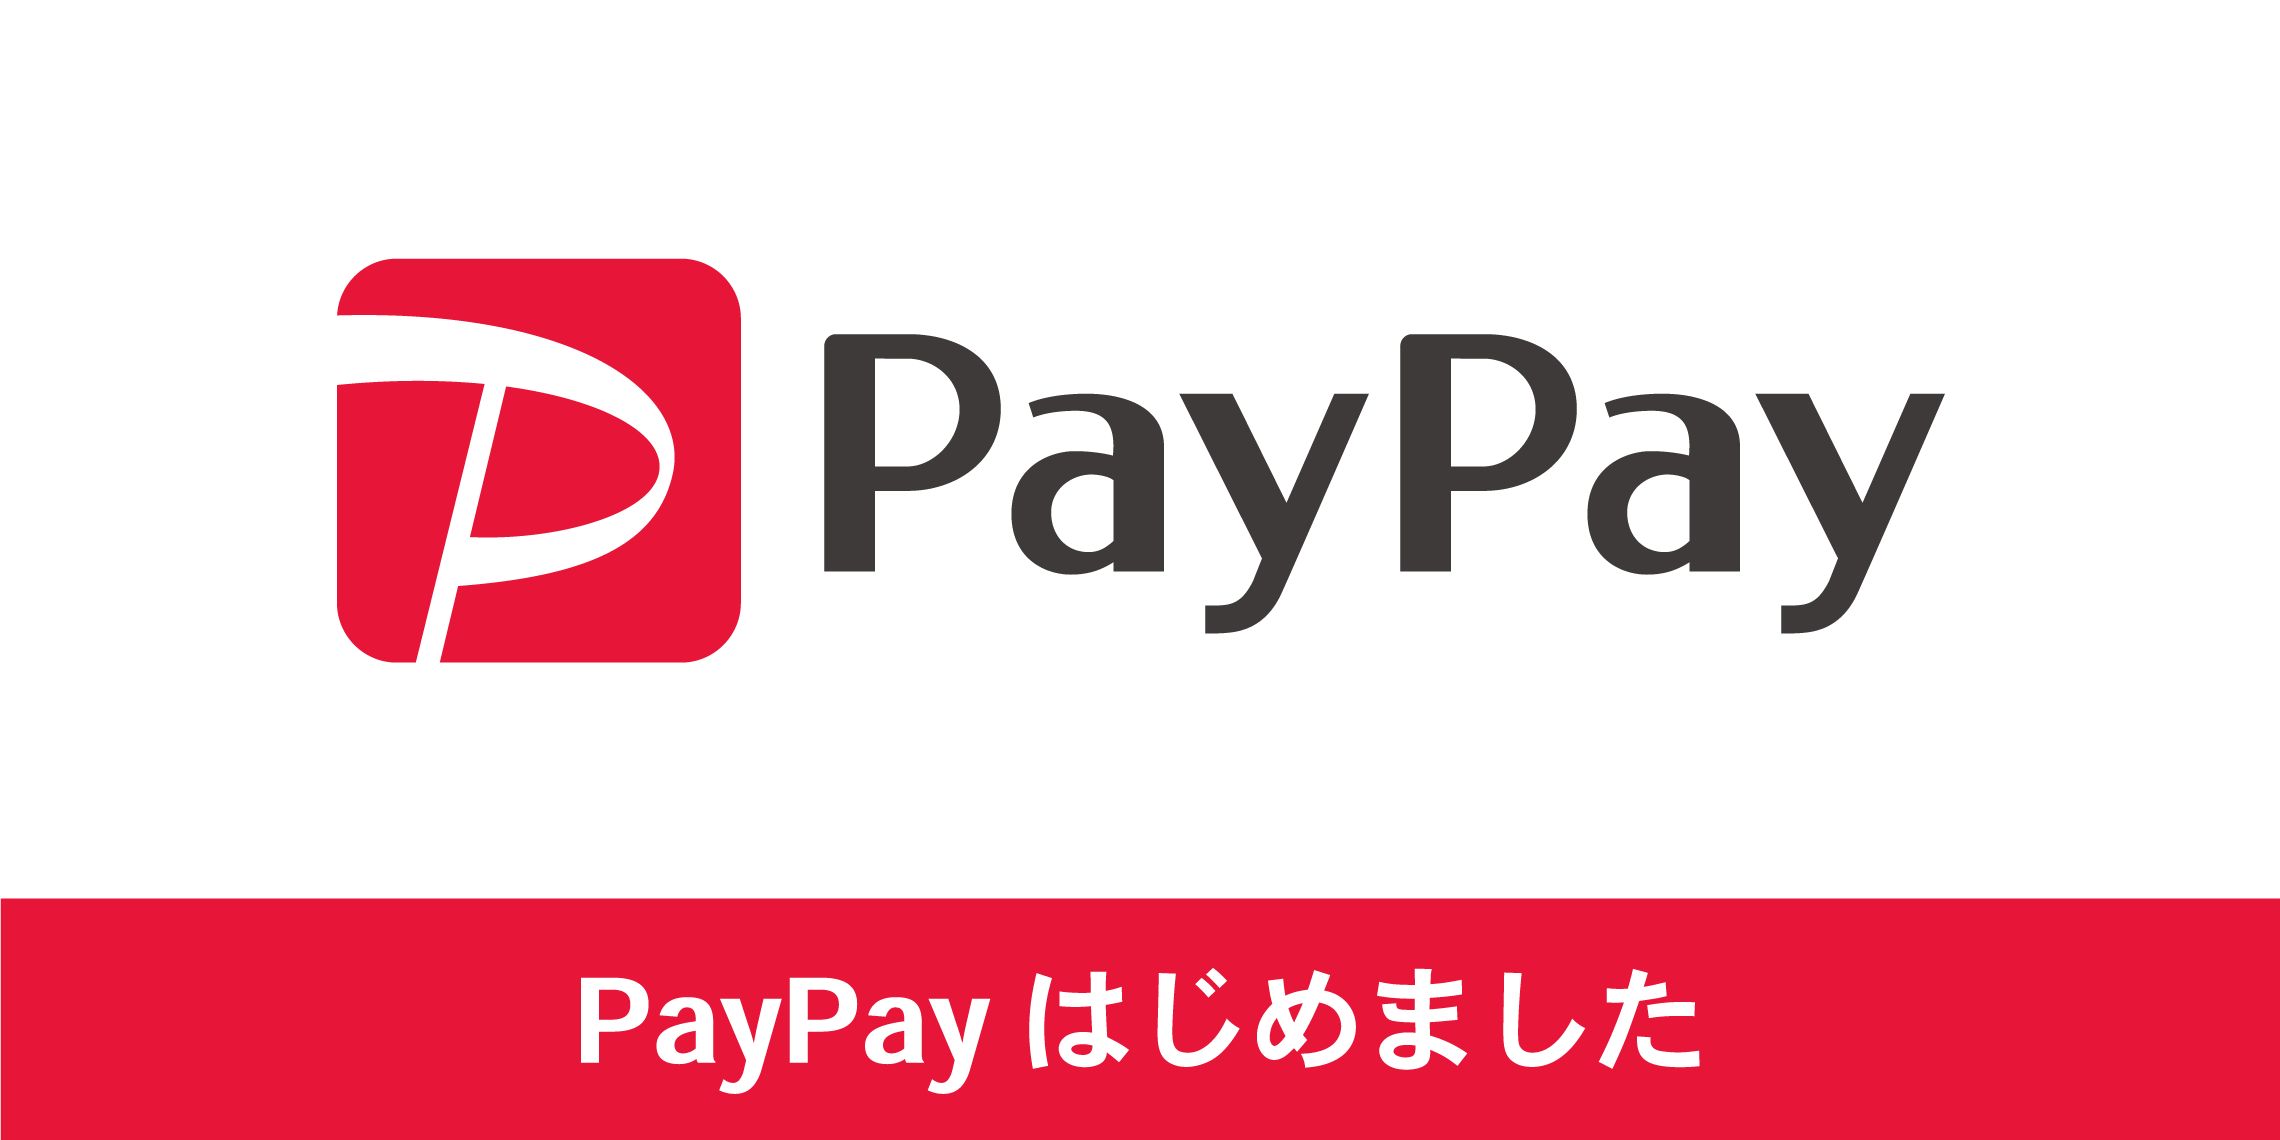 *スマホ決済サービス『PayPay』導入スタート！ 島村楽器でQRコード決済サービス『PayPay（ペイペイ）』によるお支払ができるようになりました。スマートフォンの専用アプリを使って店舗にあるQRコードを読み取るだけで、電子マネーや登録したクレジットカードからお支払いができます。 **PayPay […]